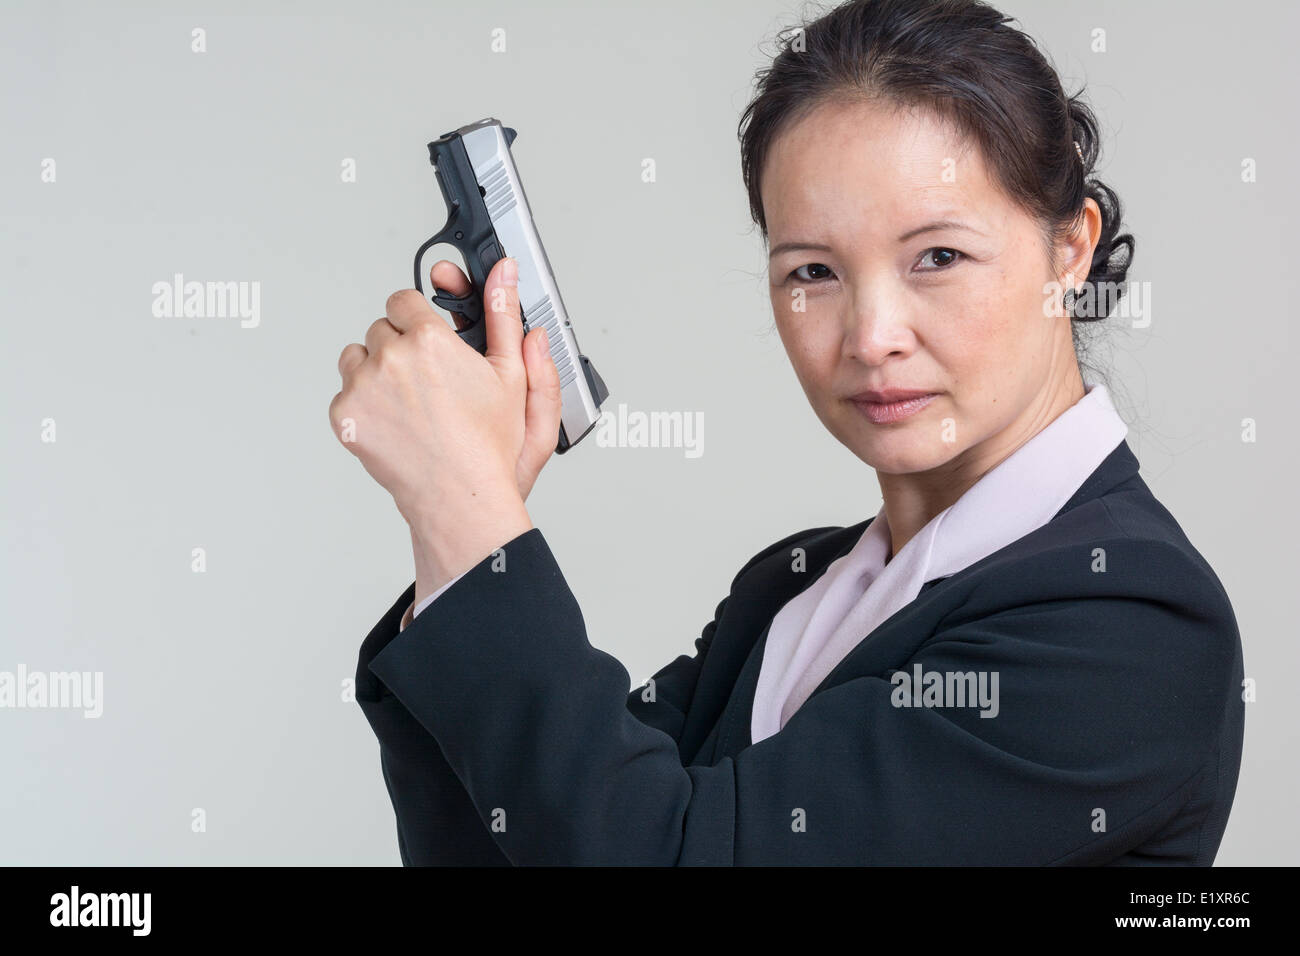 woman holding a hand gun E1XR6C